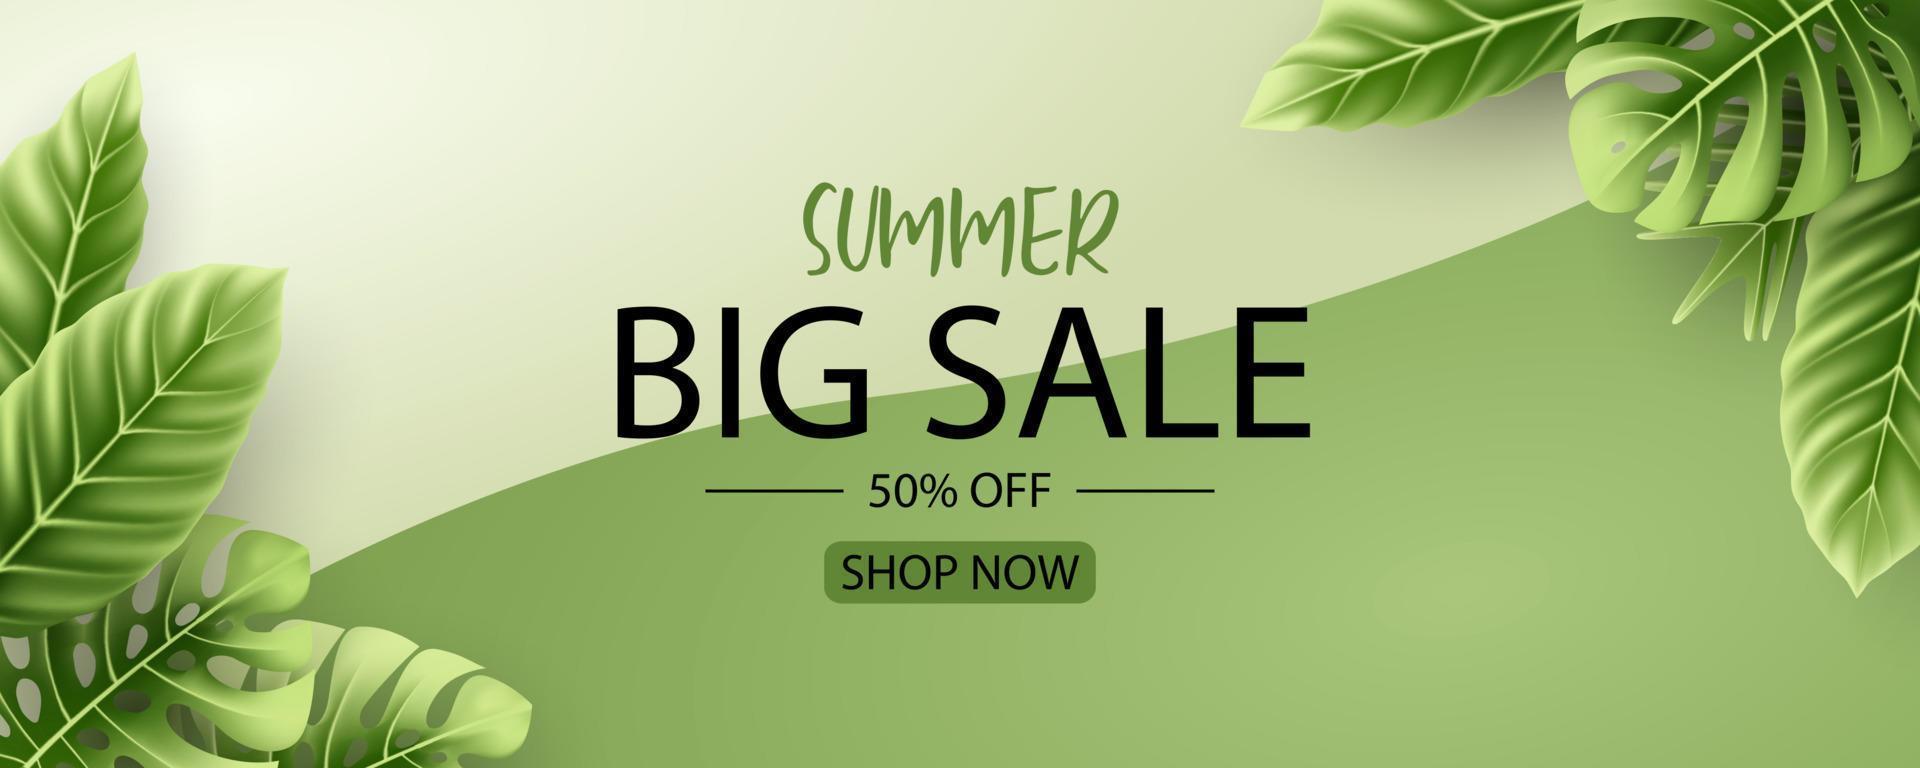 diseño de banner de venta de verano con fondo de hojas tropicales vector